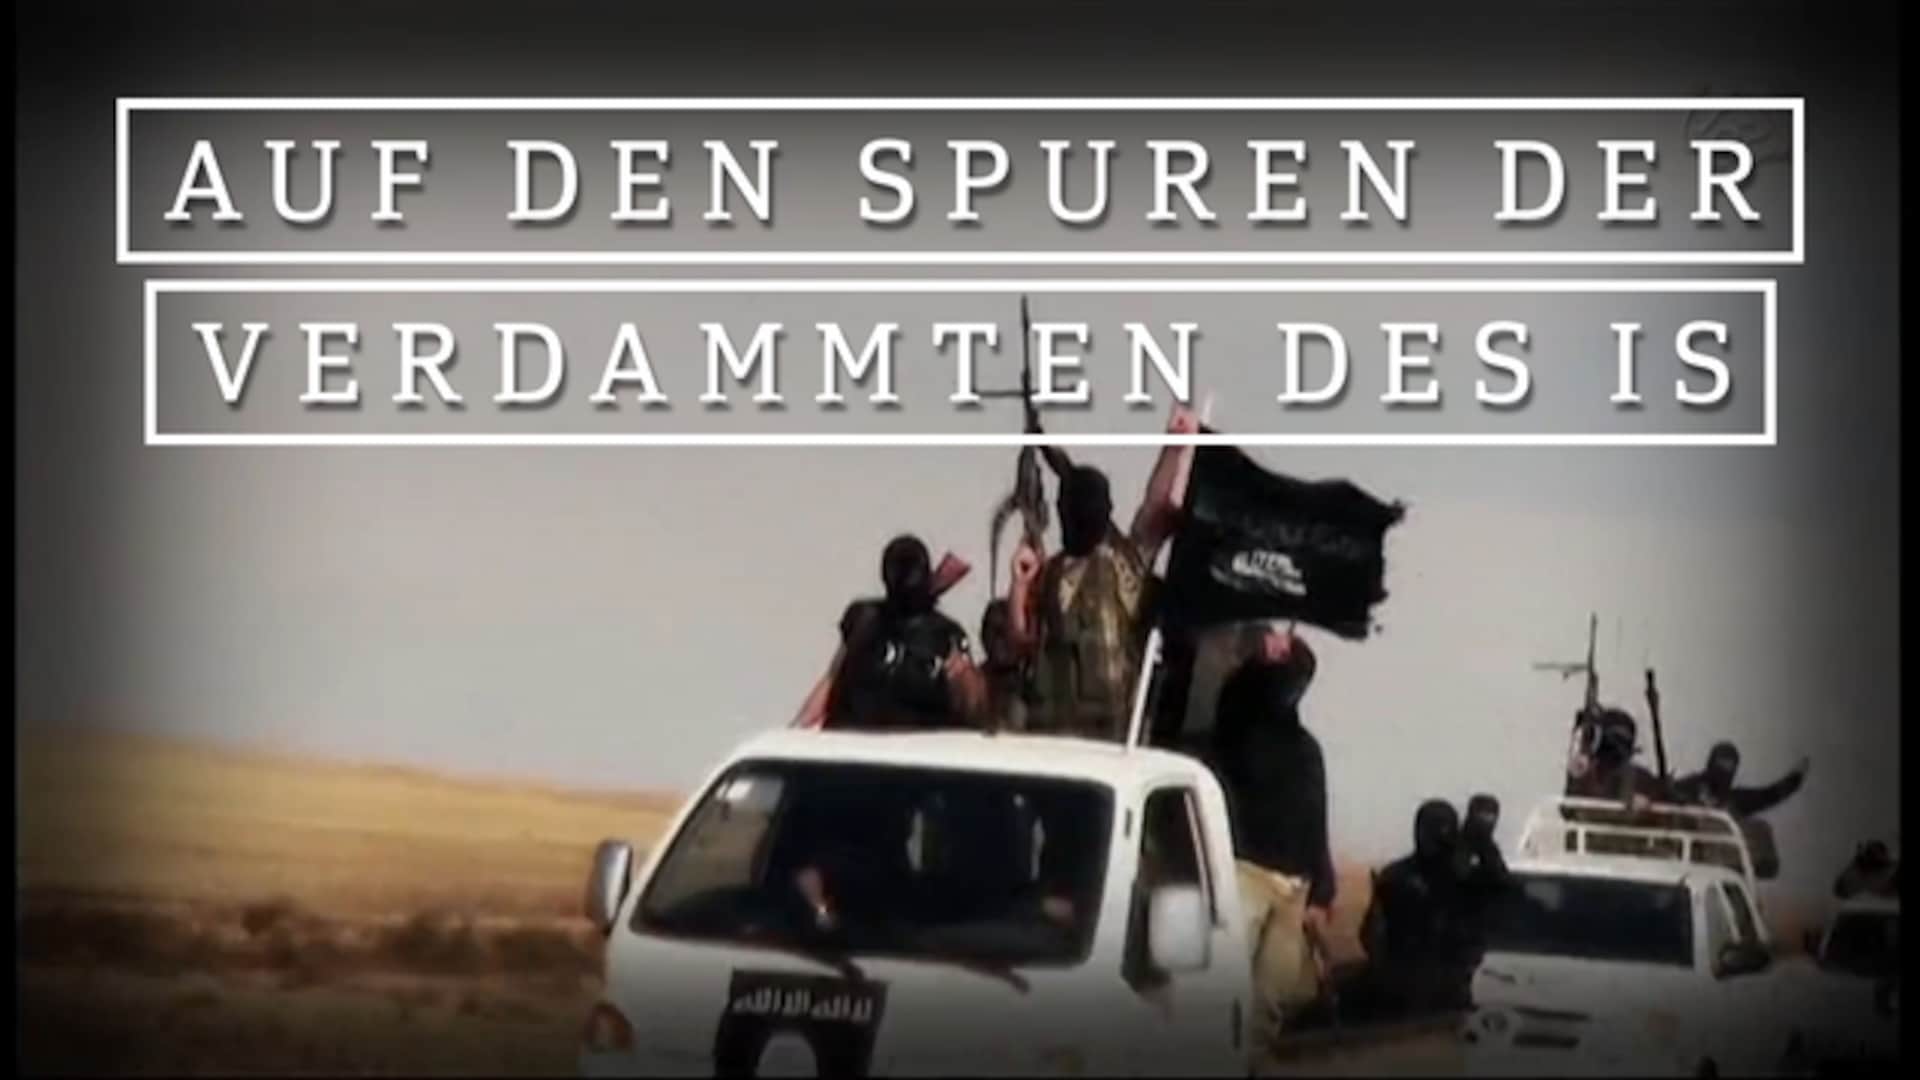 Auf den Spuren der Verdammten des IS